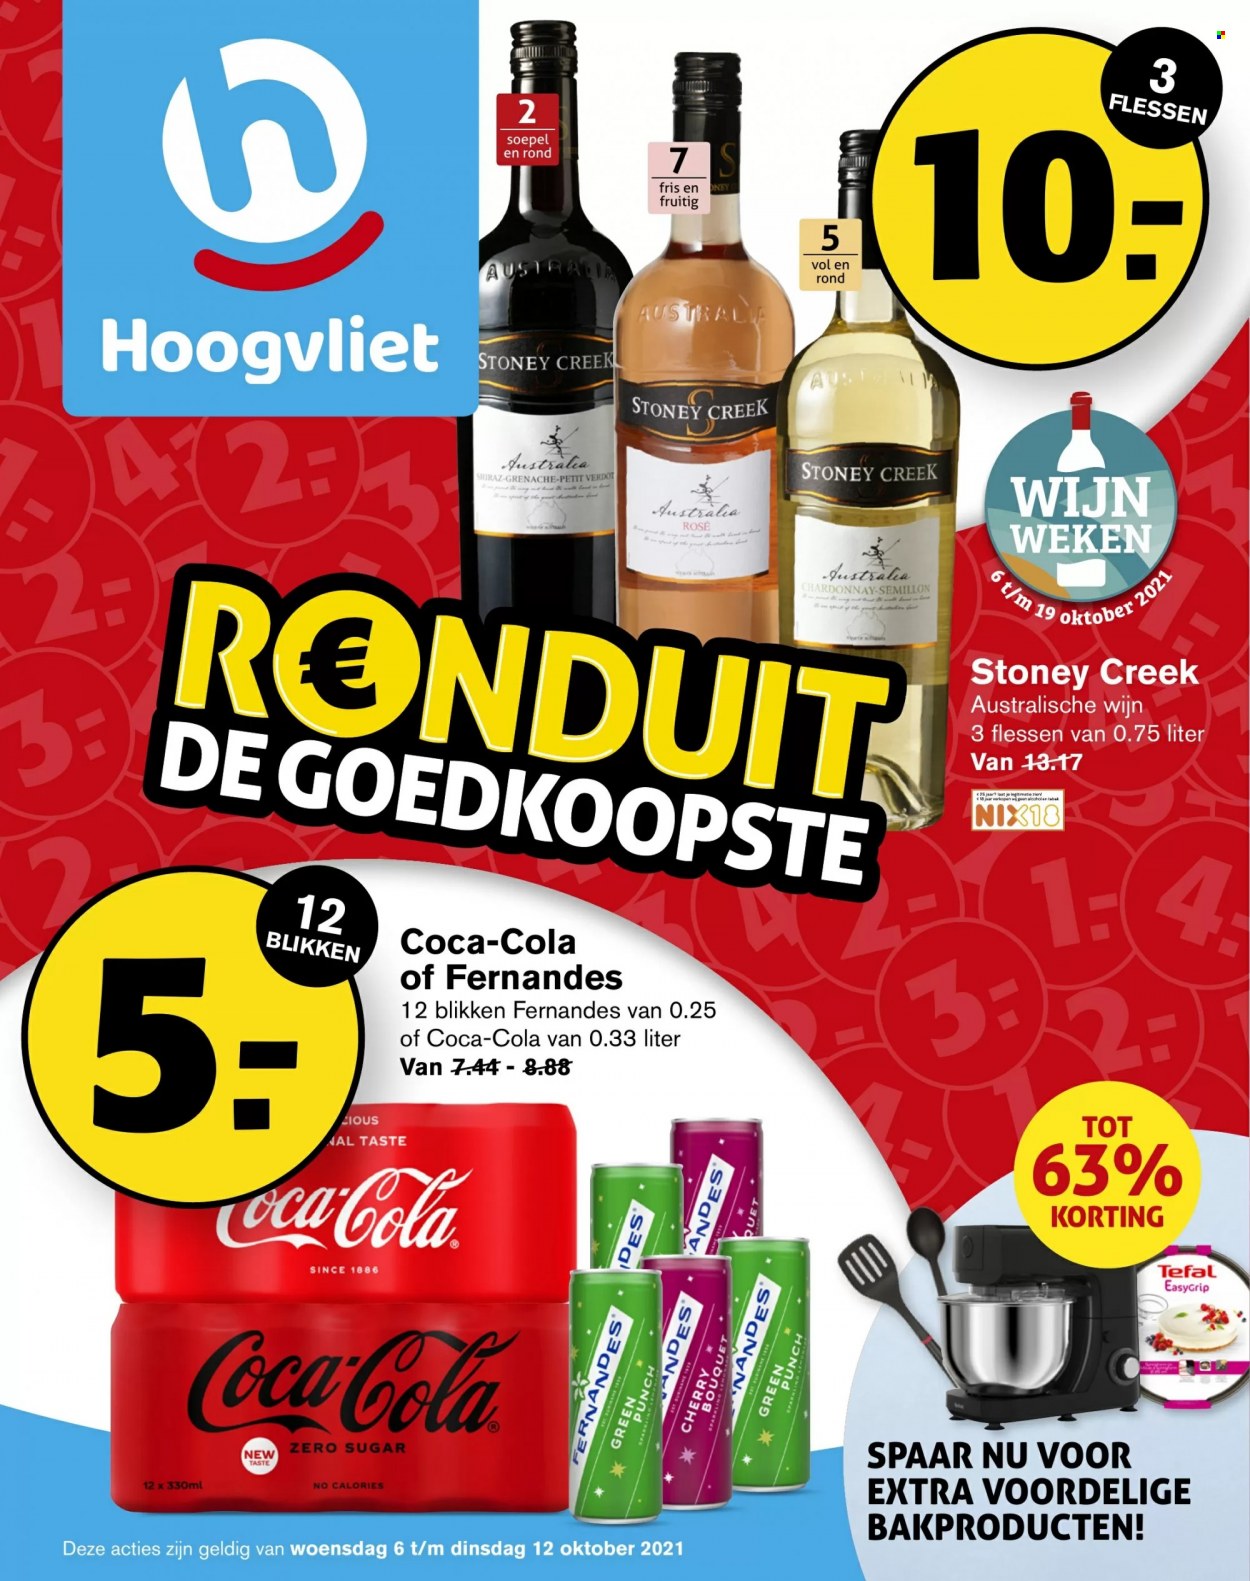 thumbnail - Hoogvliet-aanbieding - 6-10-2021 - 12-10-2021 -  producten in de aanbieding - Coca-Cola, Chardonnay, wijn, Tefal. Pagina 1.